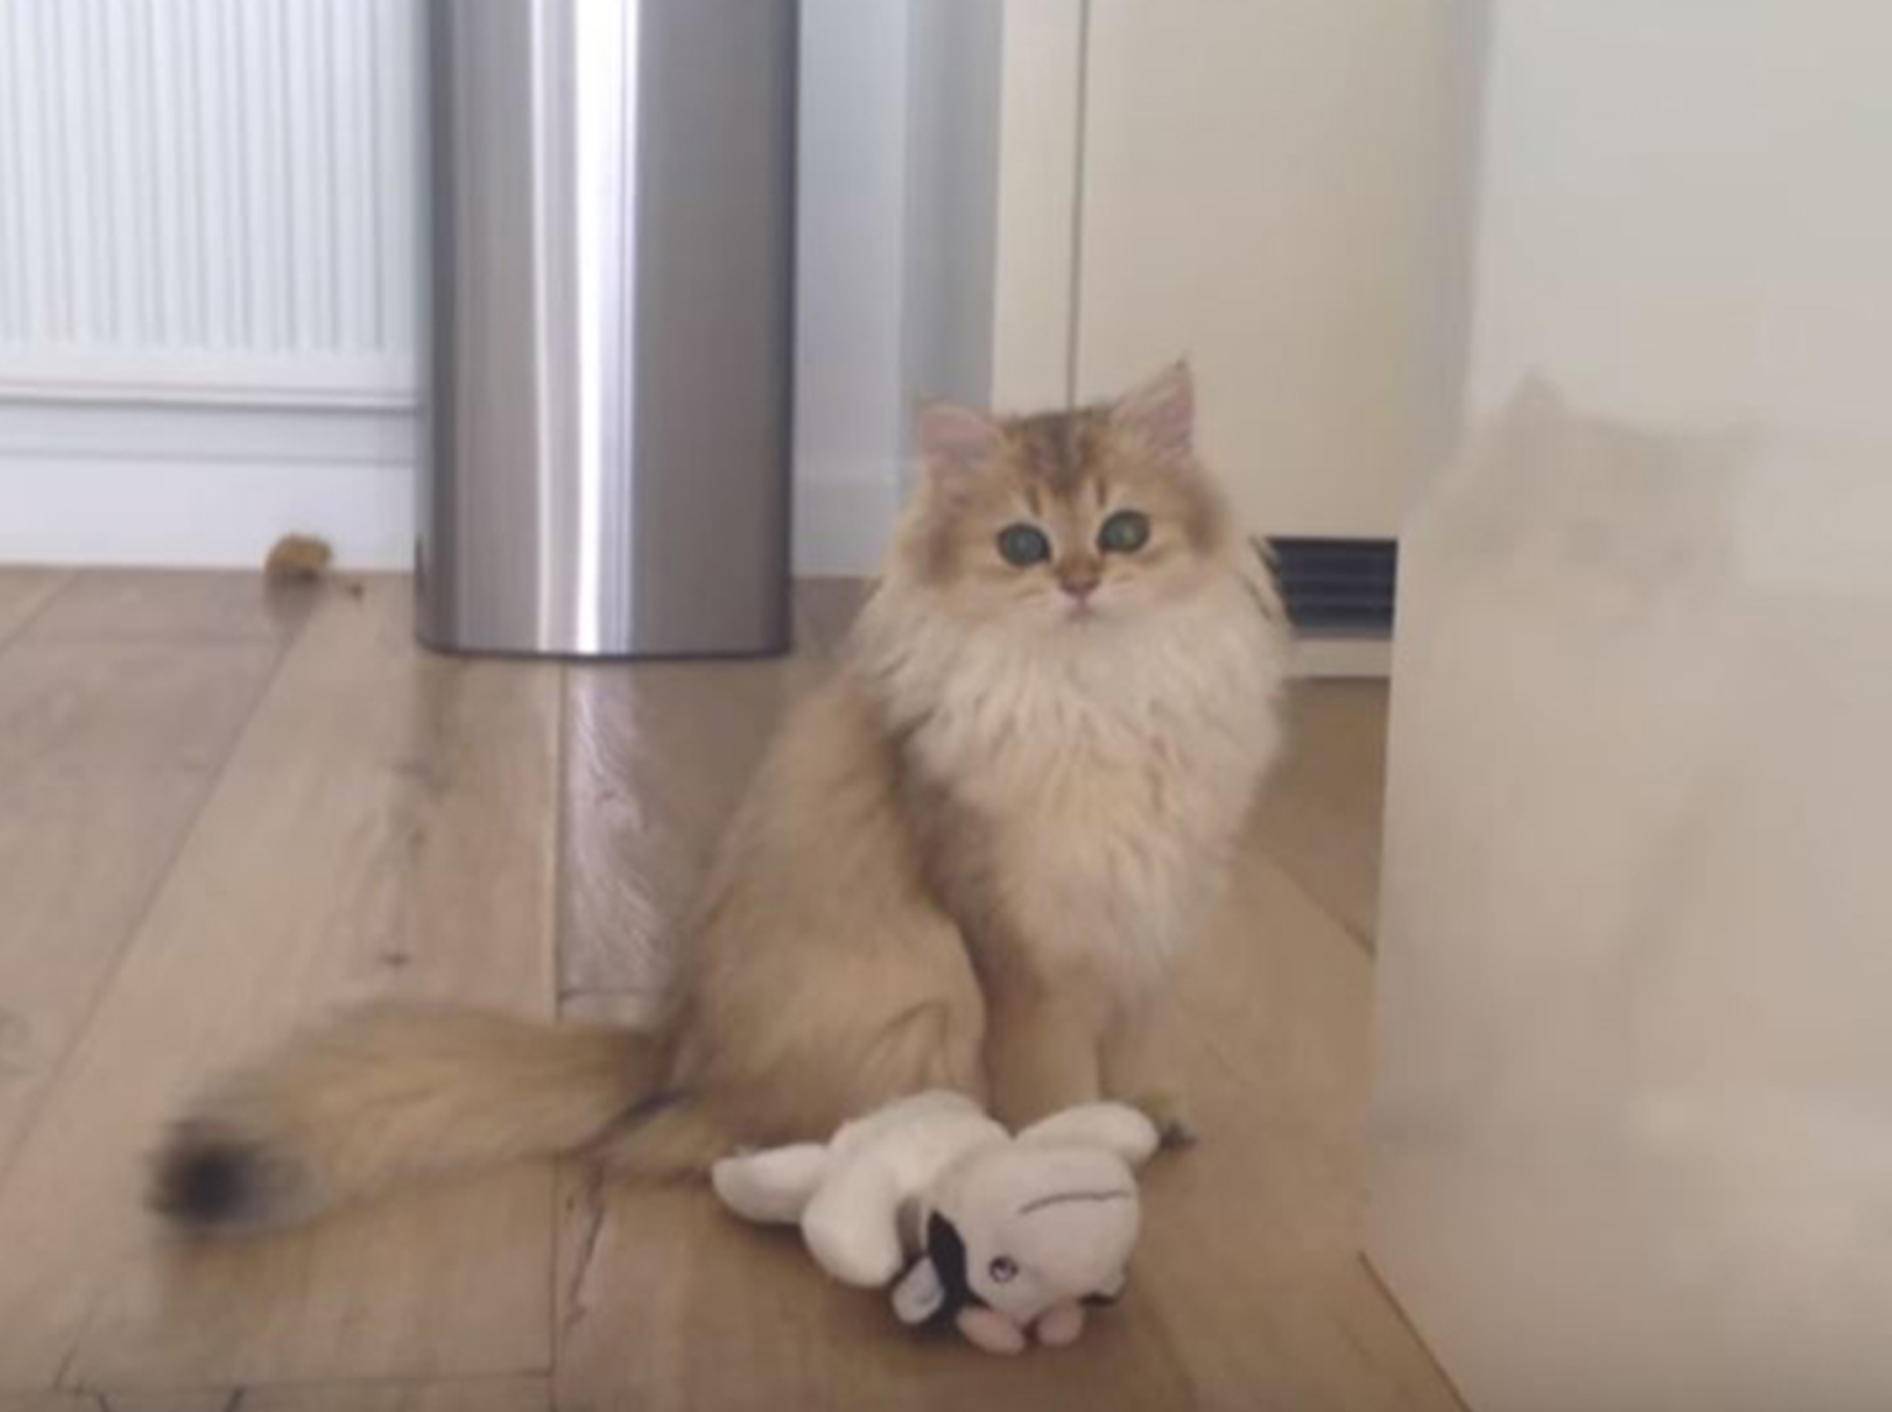 Katze Smoothie liebte es schon als Teenager auf Entdeckungstour zu gehen - YouTube / smoothiethecat